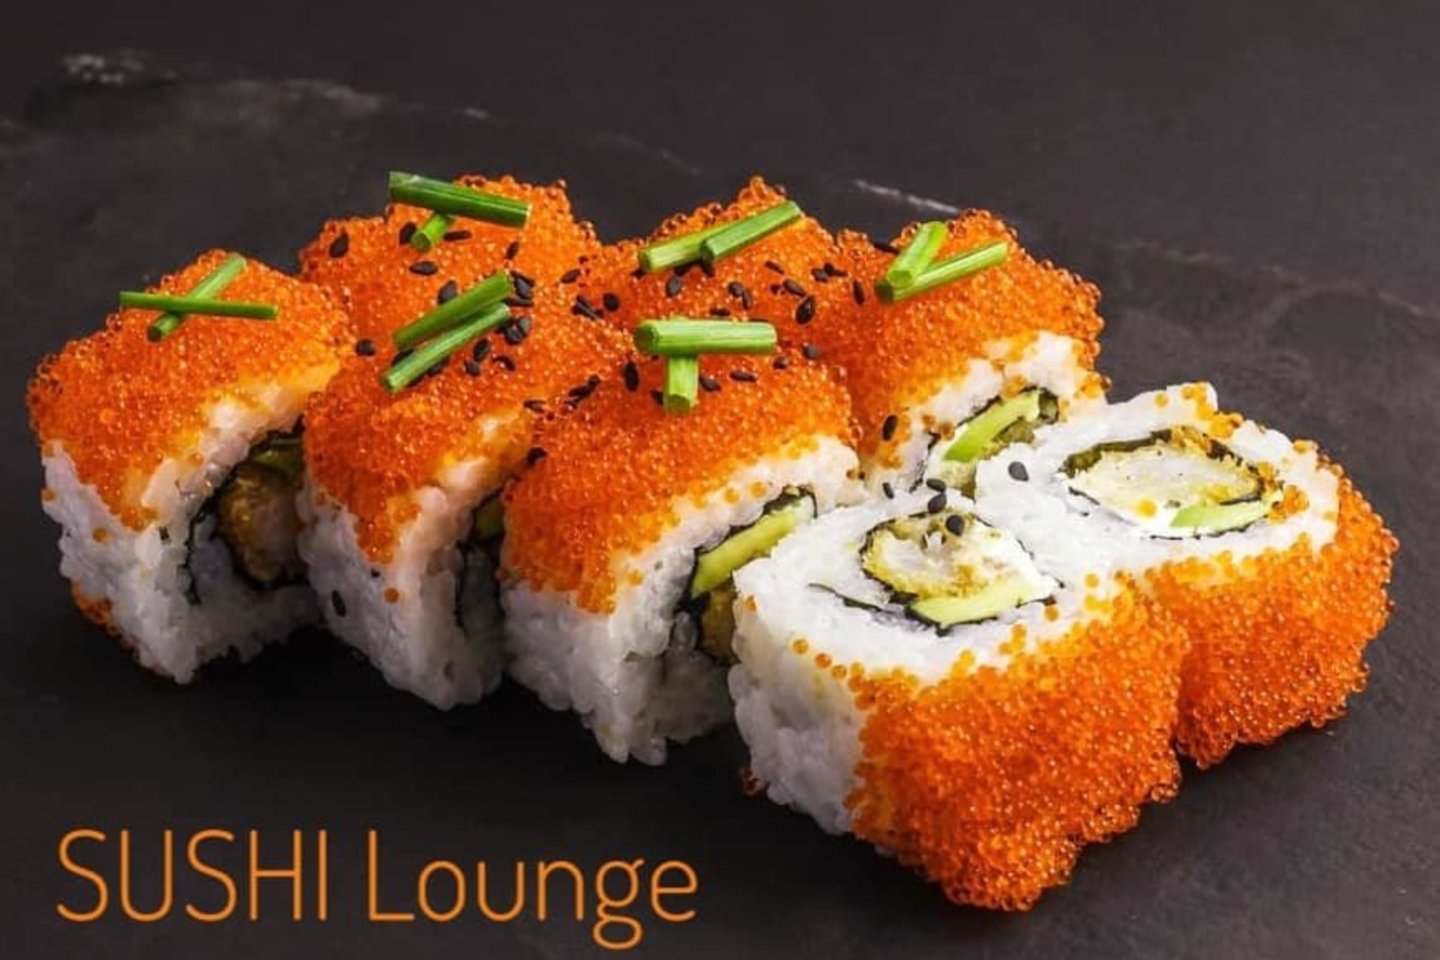 Kauno Laisvės alėjoje įsikūręs restoranas „Sushi Lounge“ – tai tikra neišragautų skonių istorija.